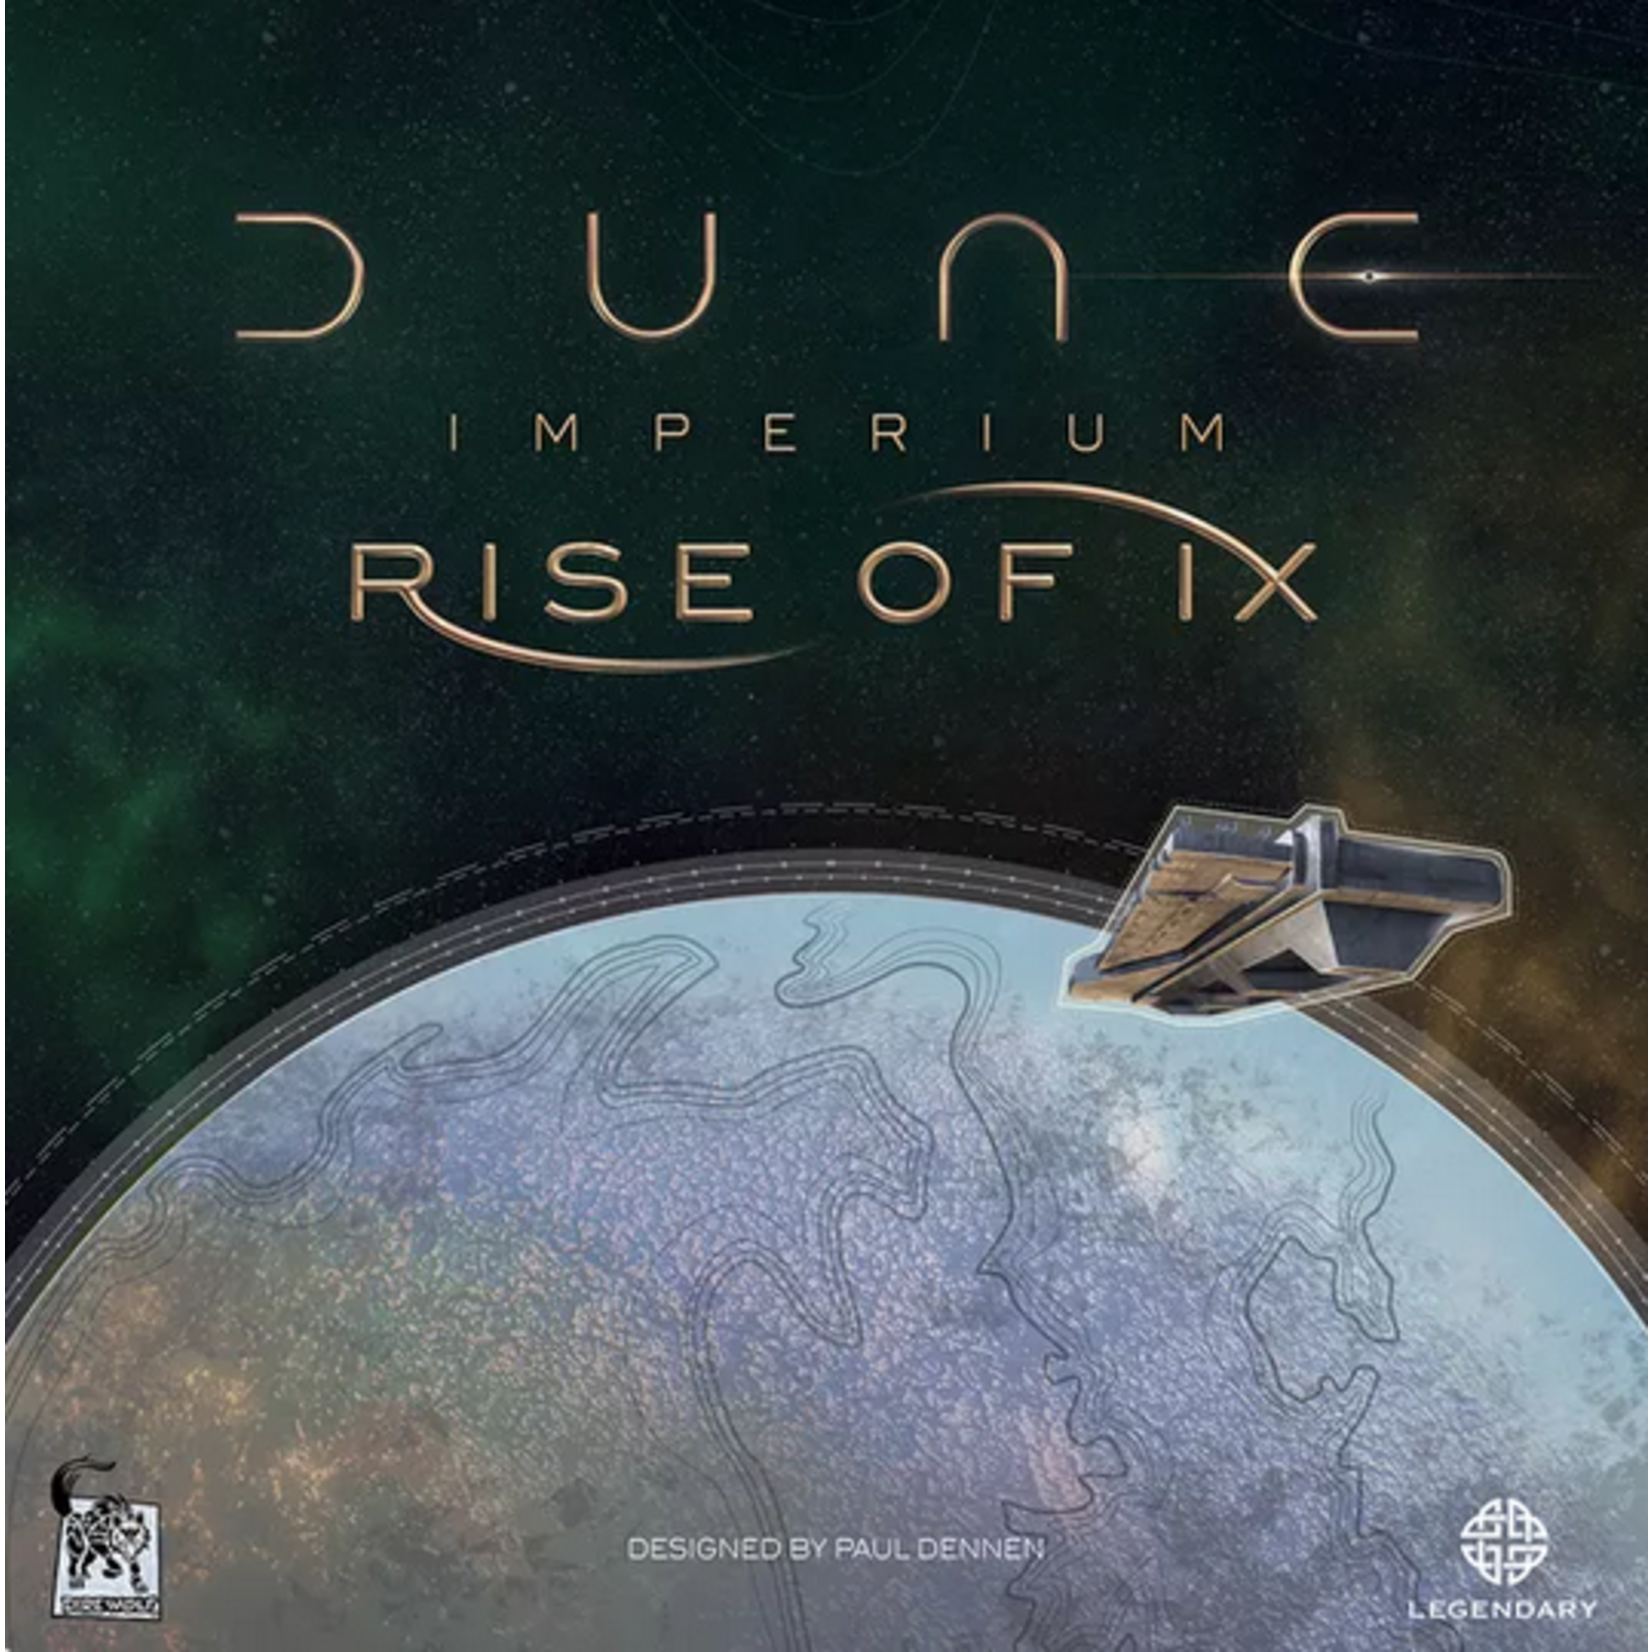 Dune: Imperium Rise of Ix Expansion